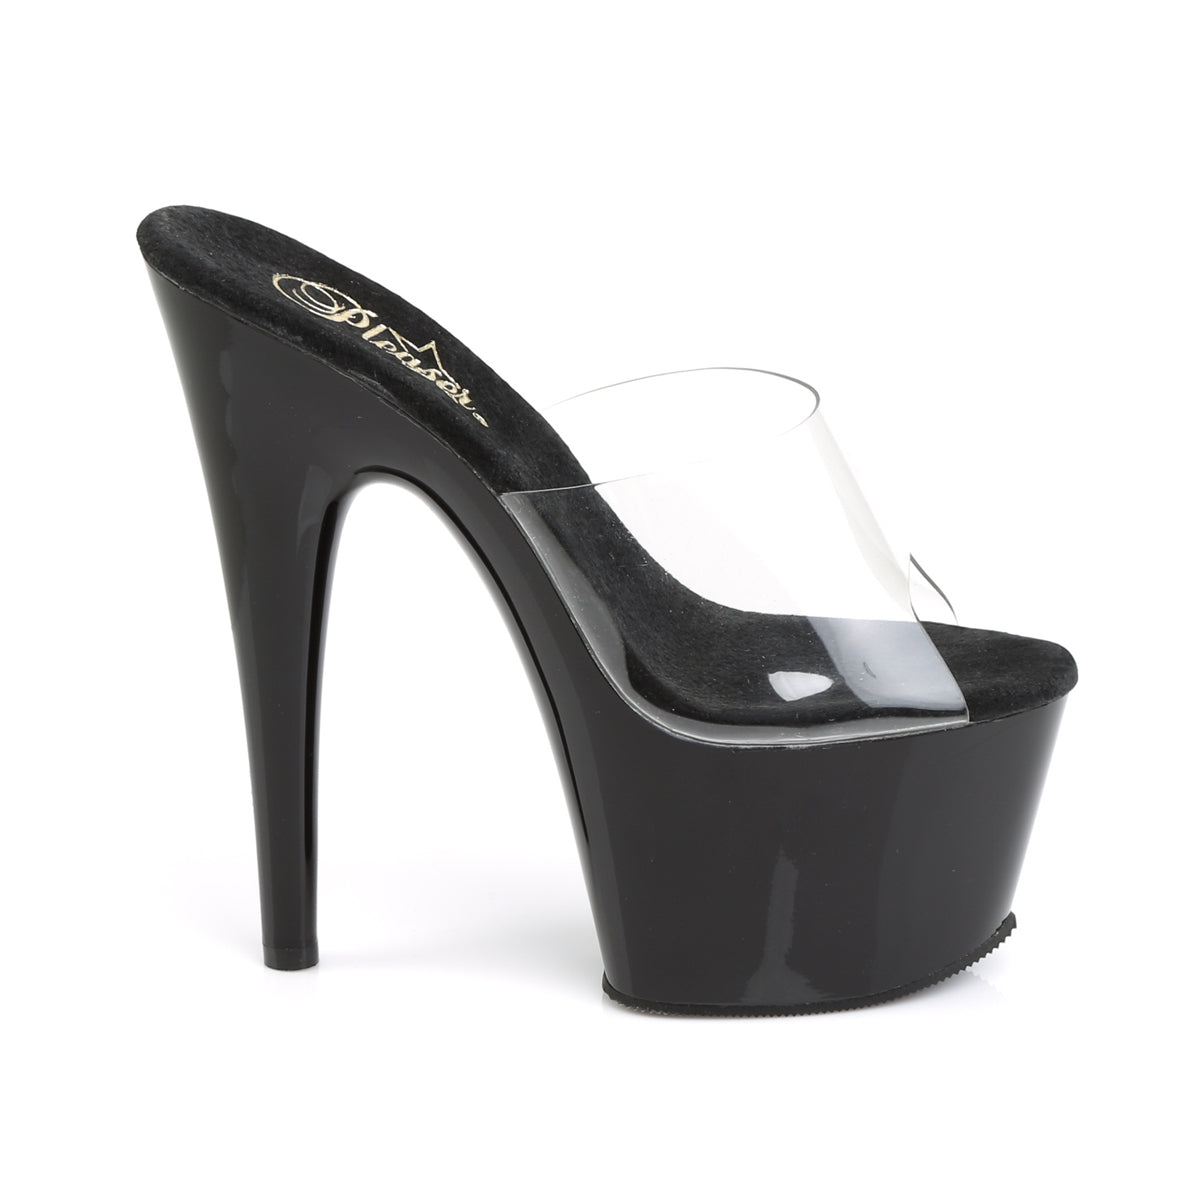 Pleaser Womens Sandals ADORE-701 Clr/Blk